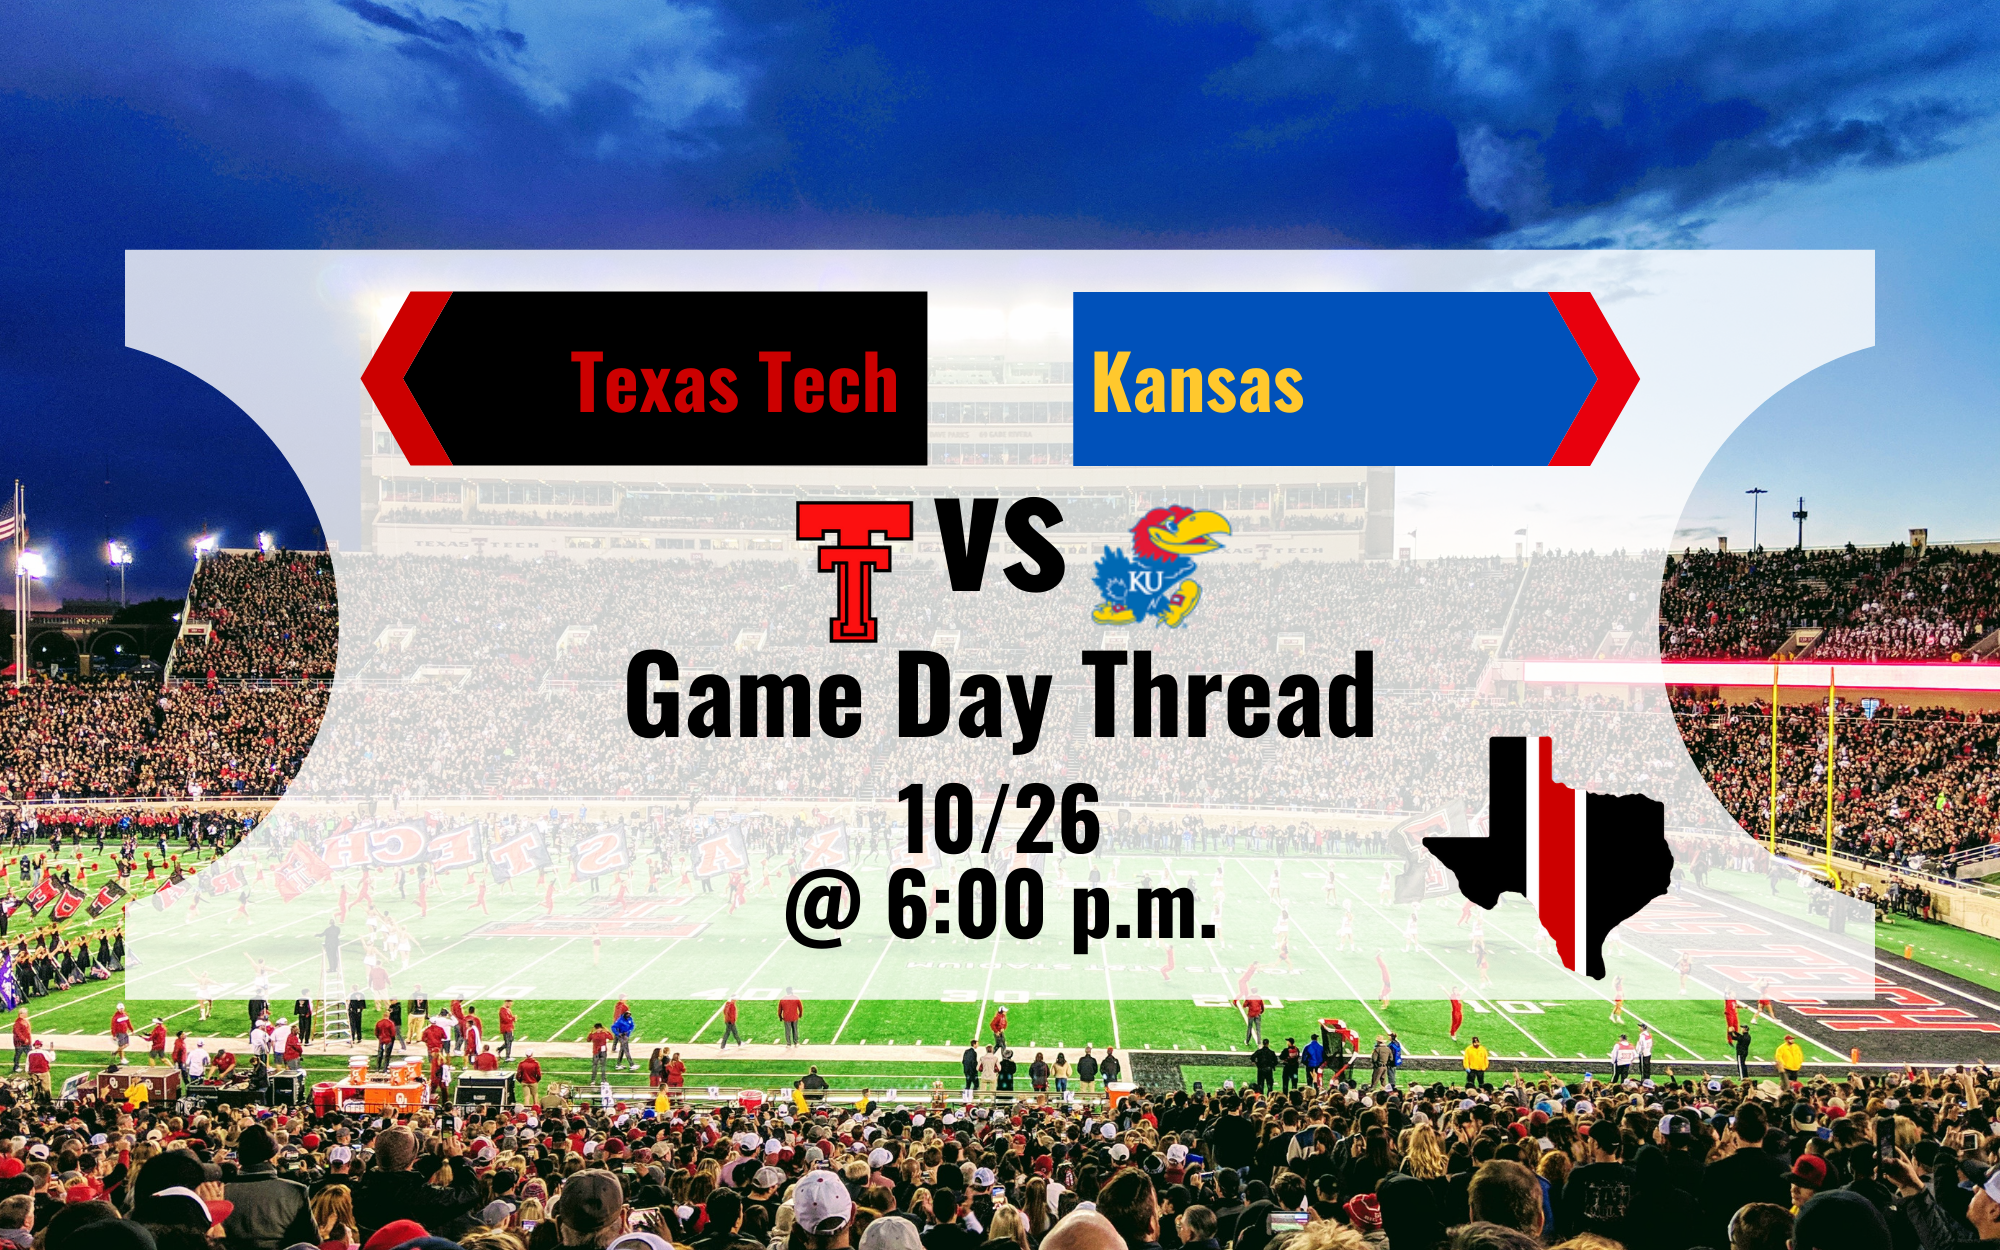 Game Day Thread 2: Texas Tech vs. Kansas